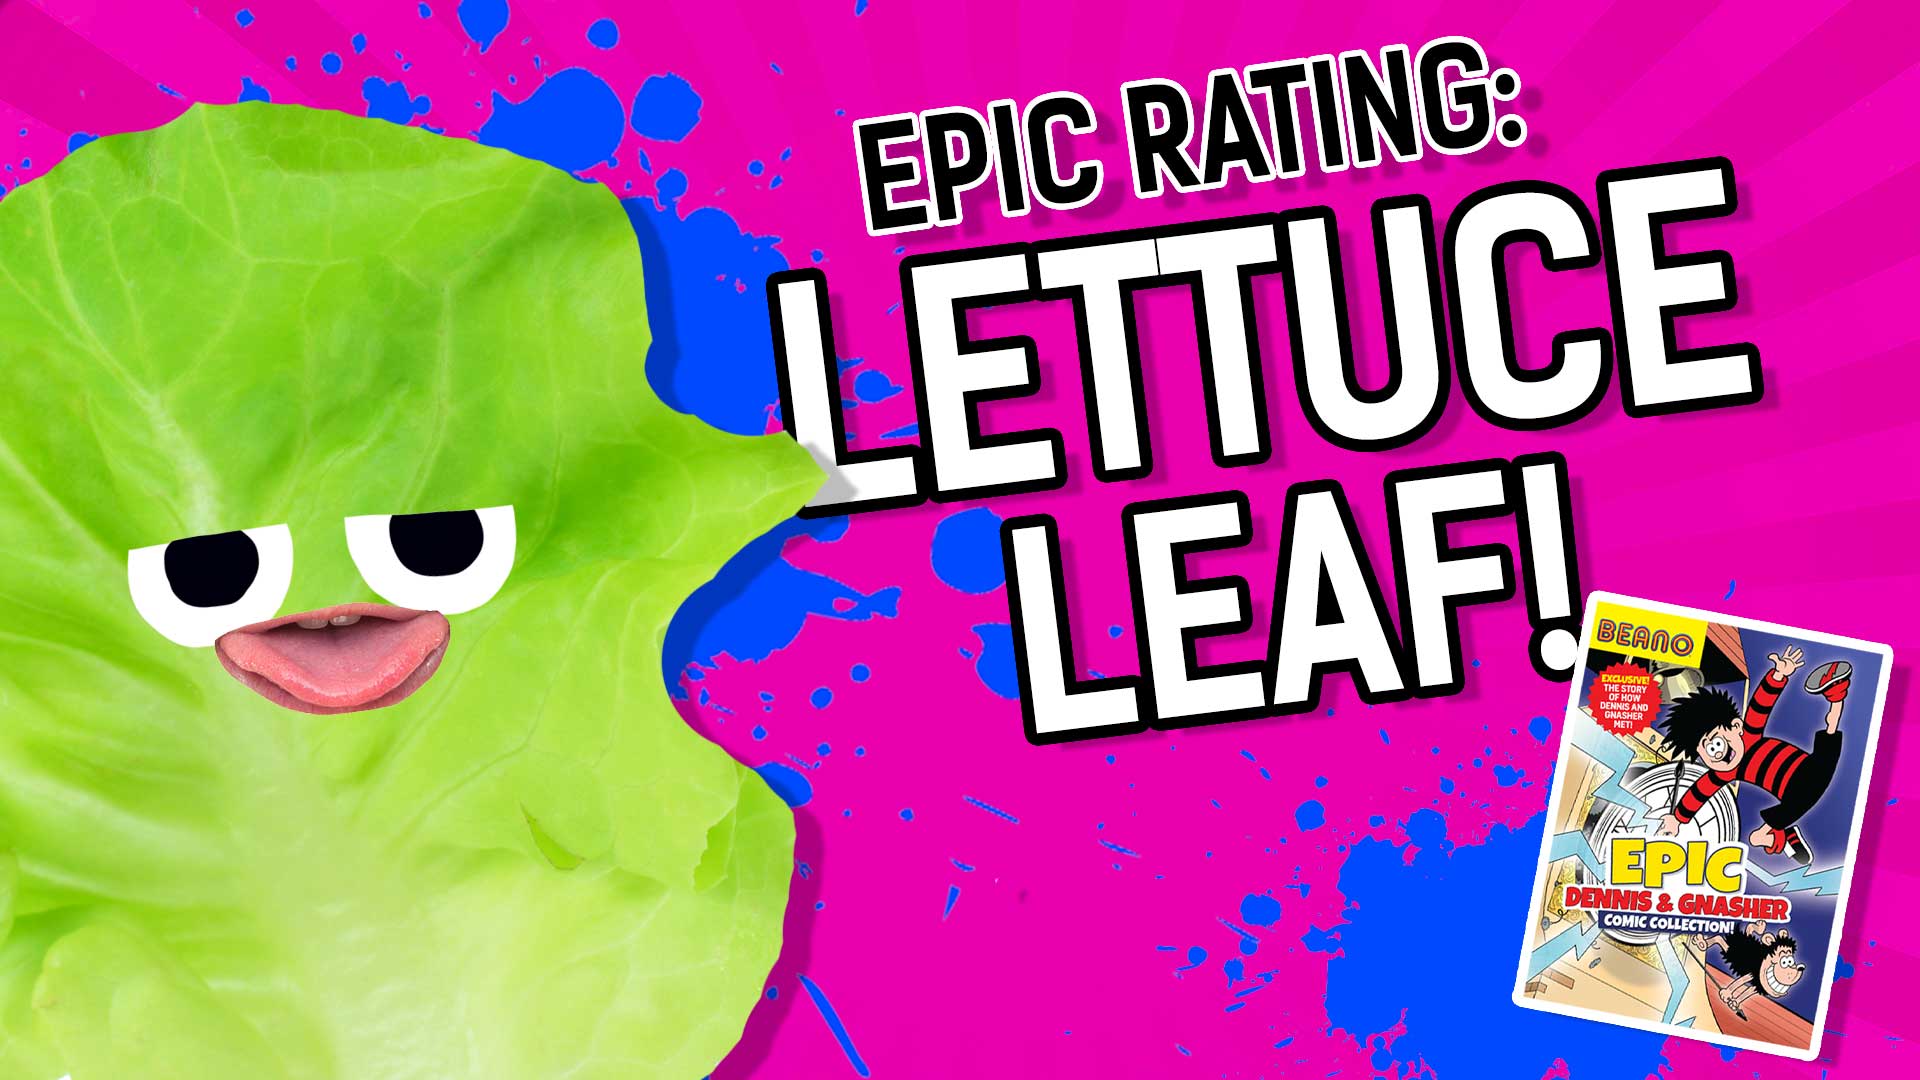 Epic Rating: Lettuce Leaf